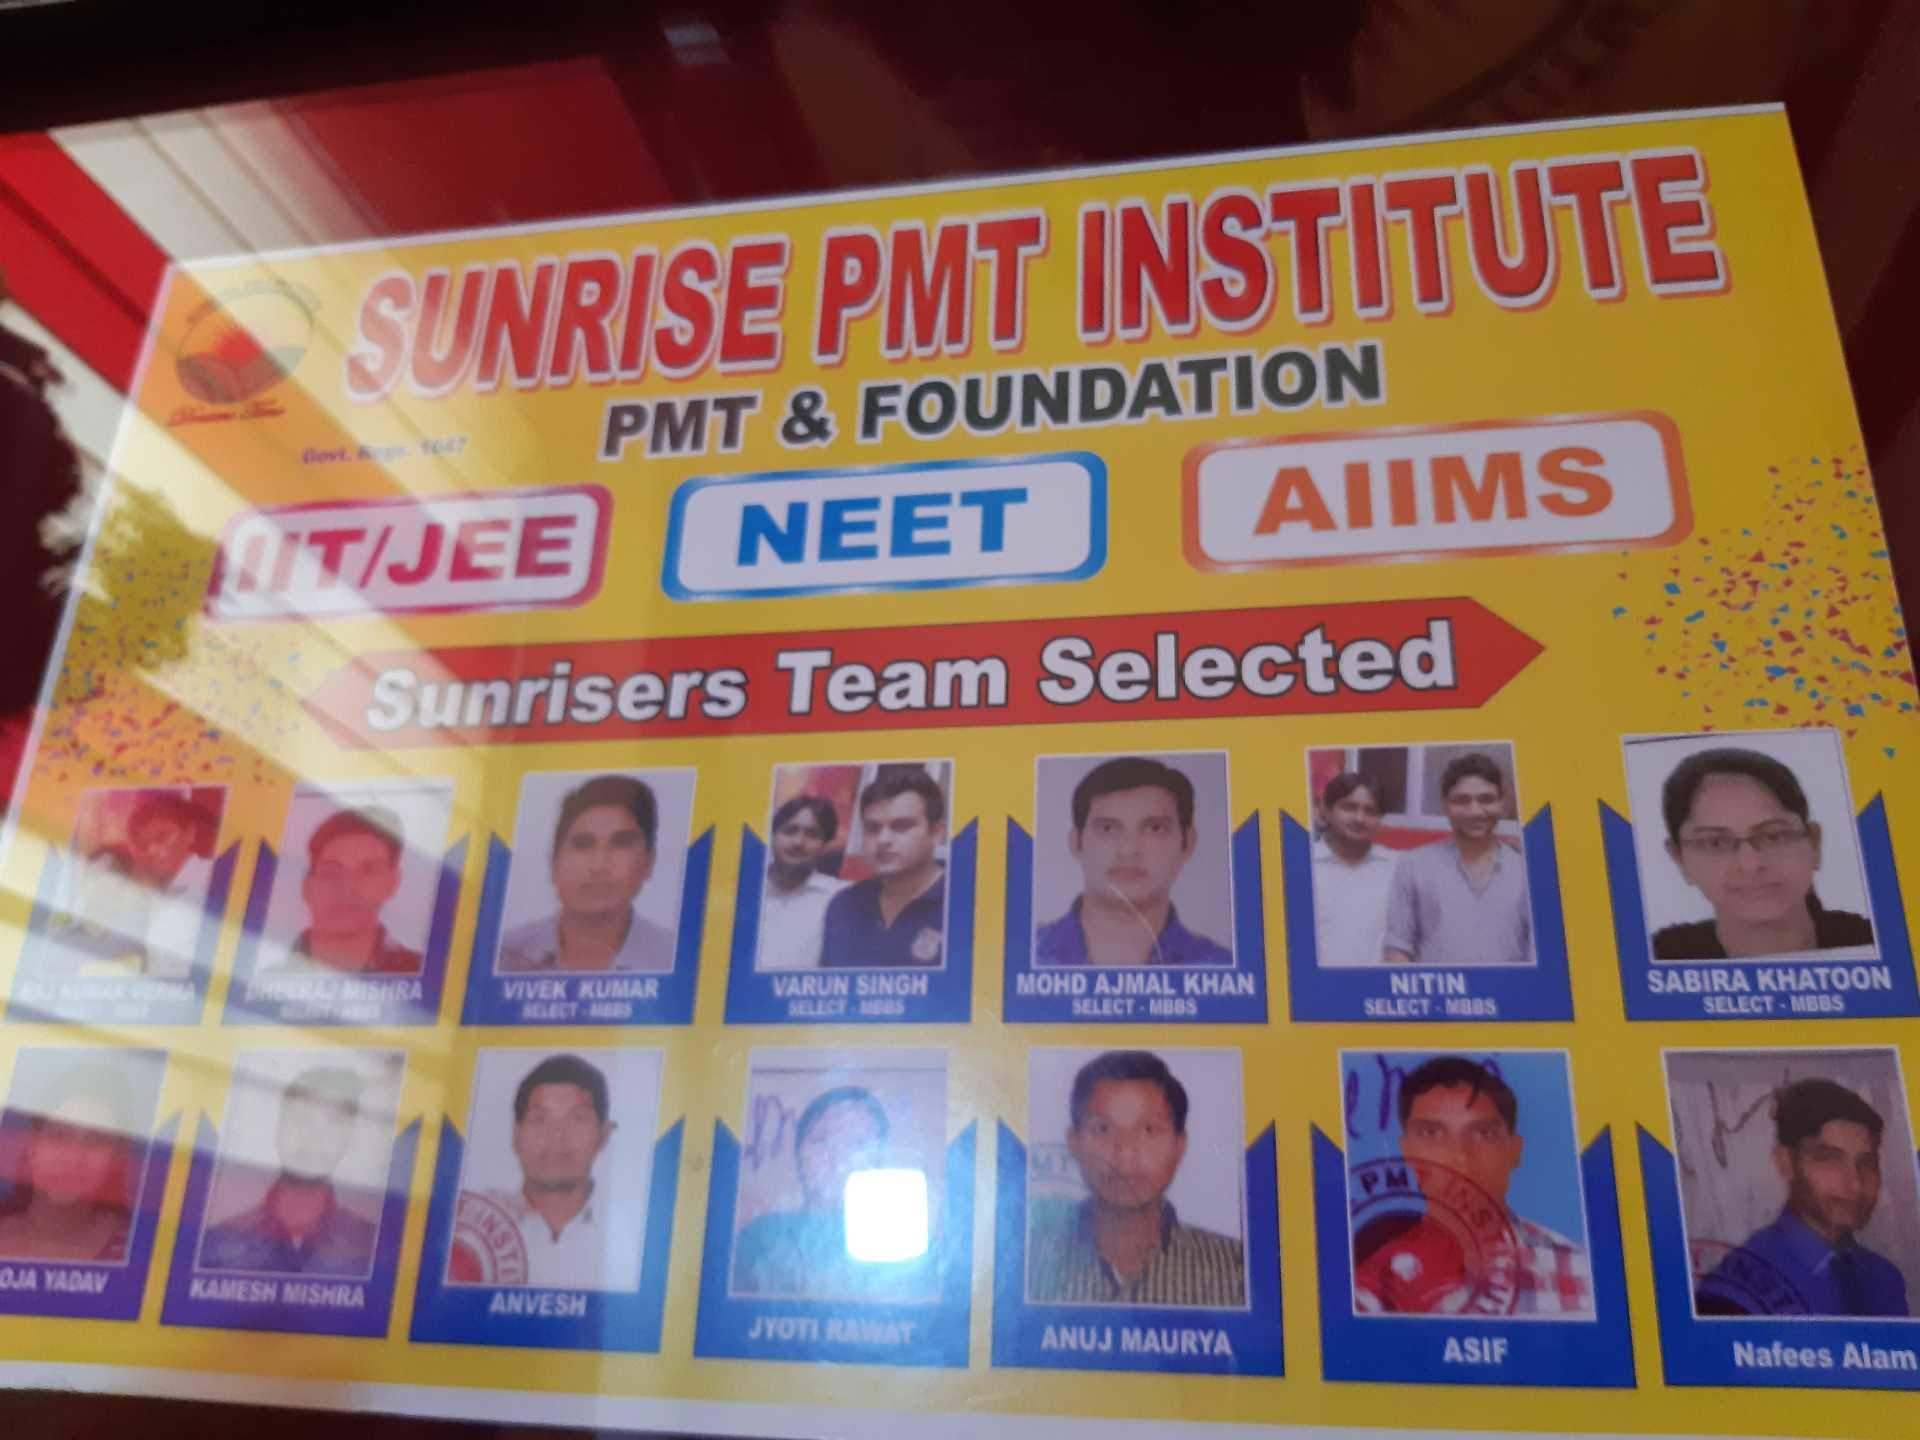 Sunrise Pmt Institute